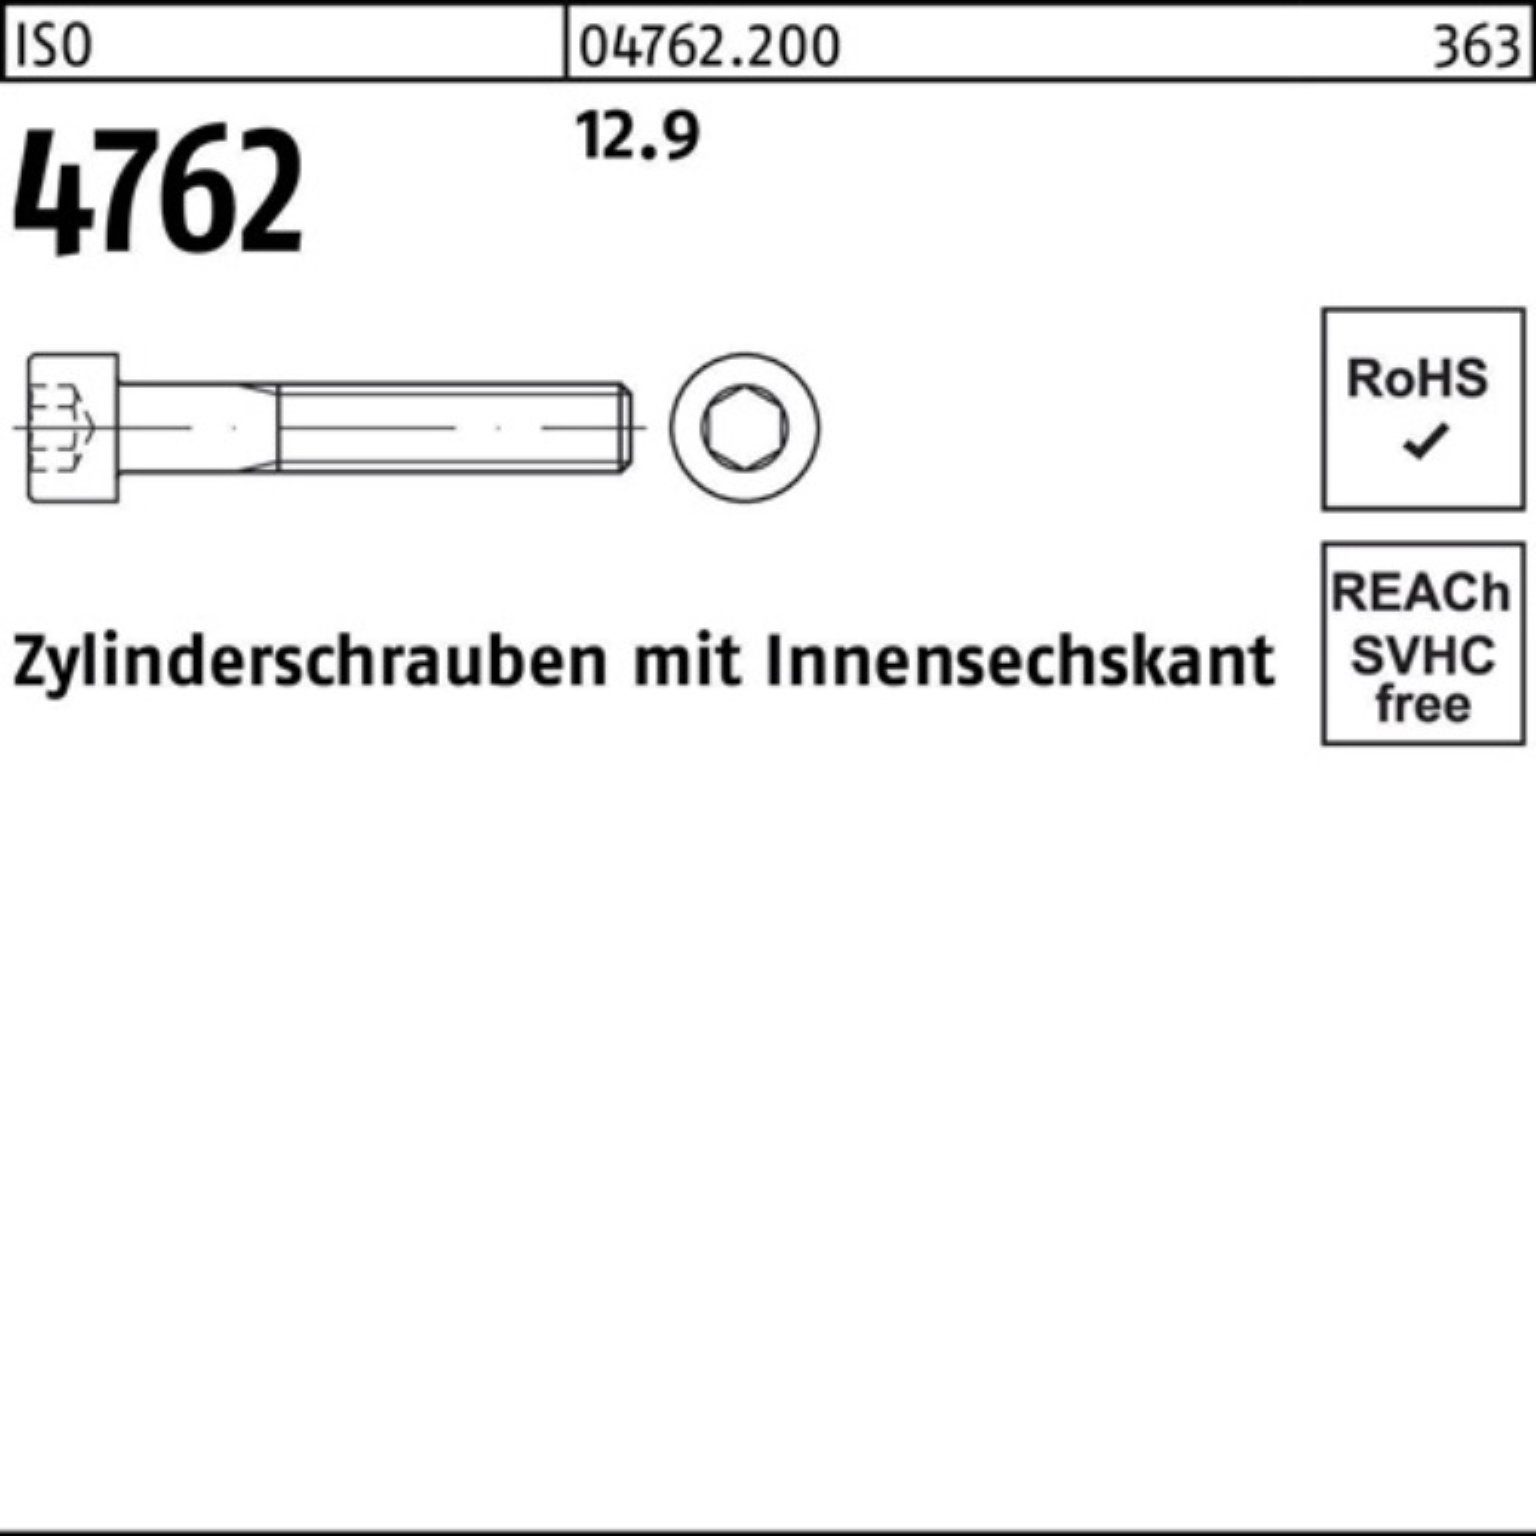 Zylinderschraube 100er Zylinderschraube 1 12.9 M30x Innen-6kt Pack 100 Stück Reyher 4762 ISO